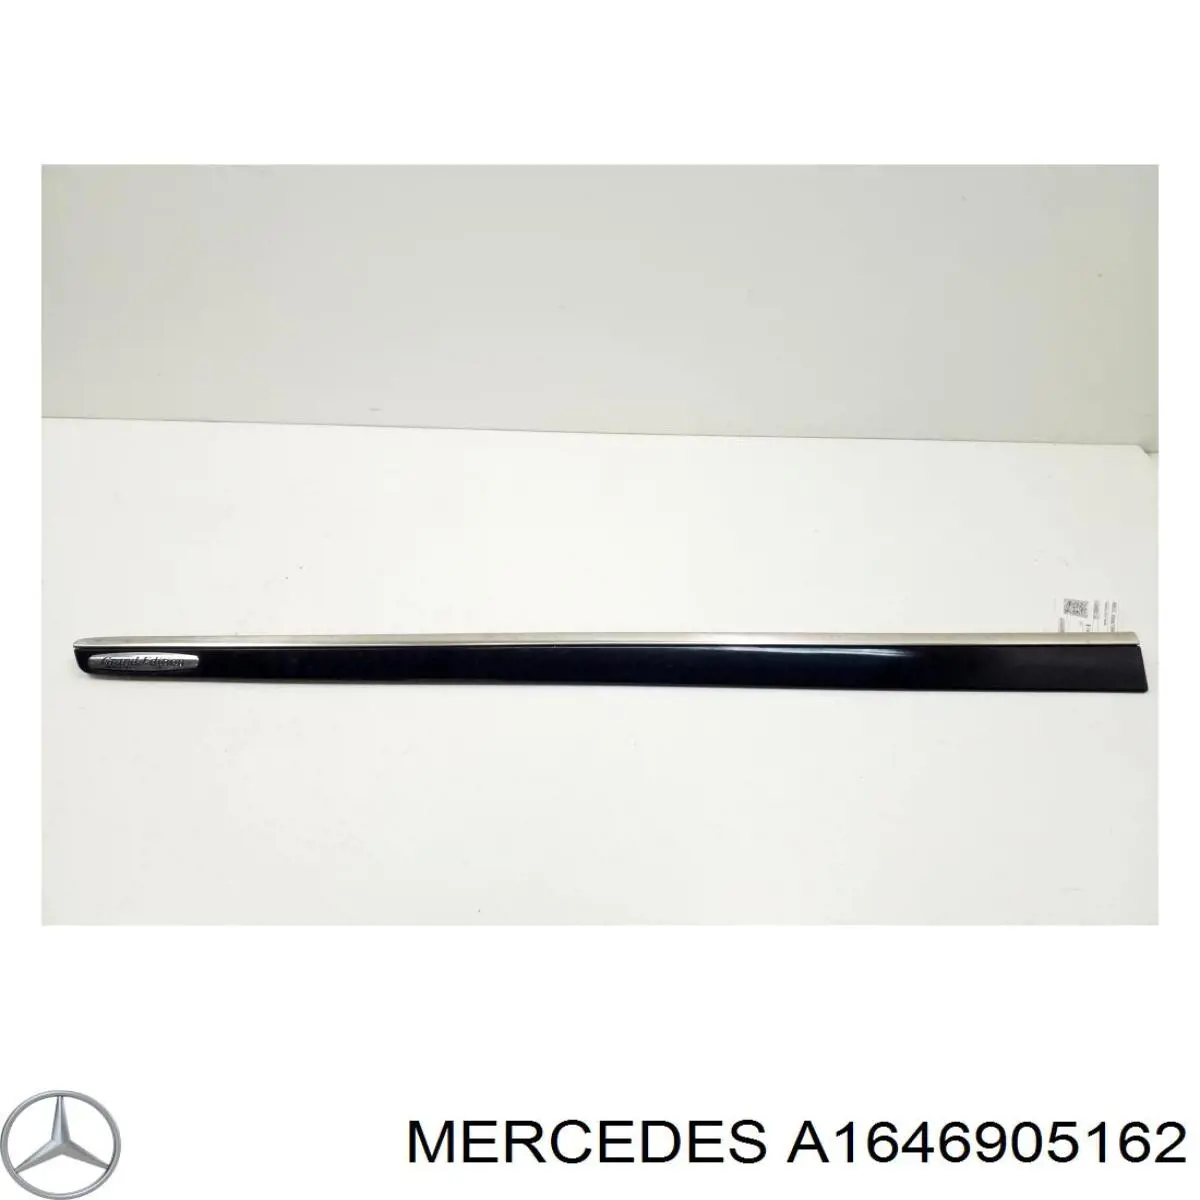 A1646905162 Mercedes moldura da porta dianteira esquerda